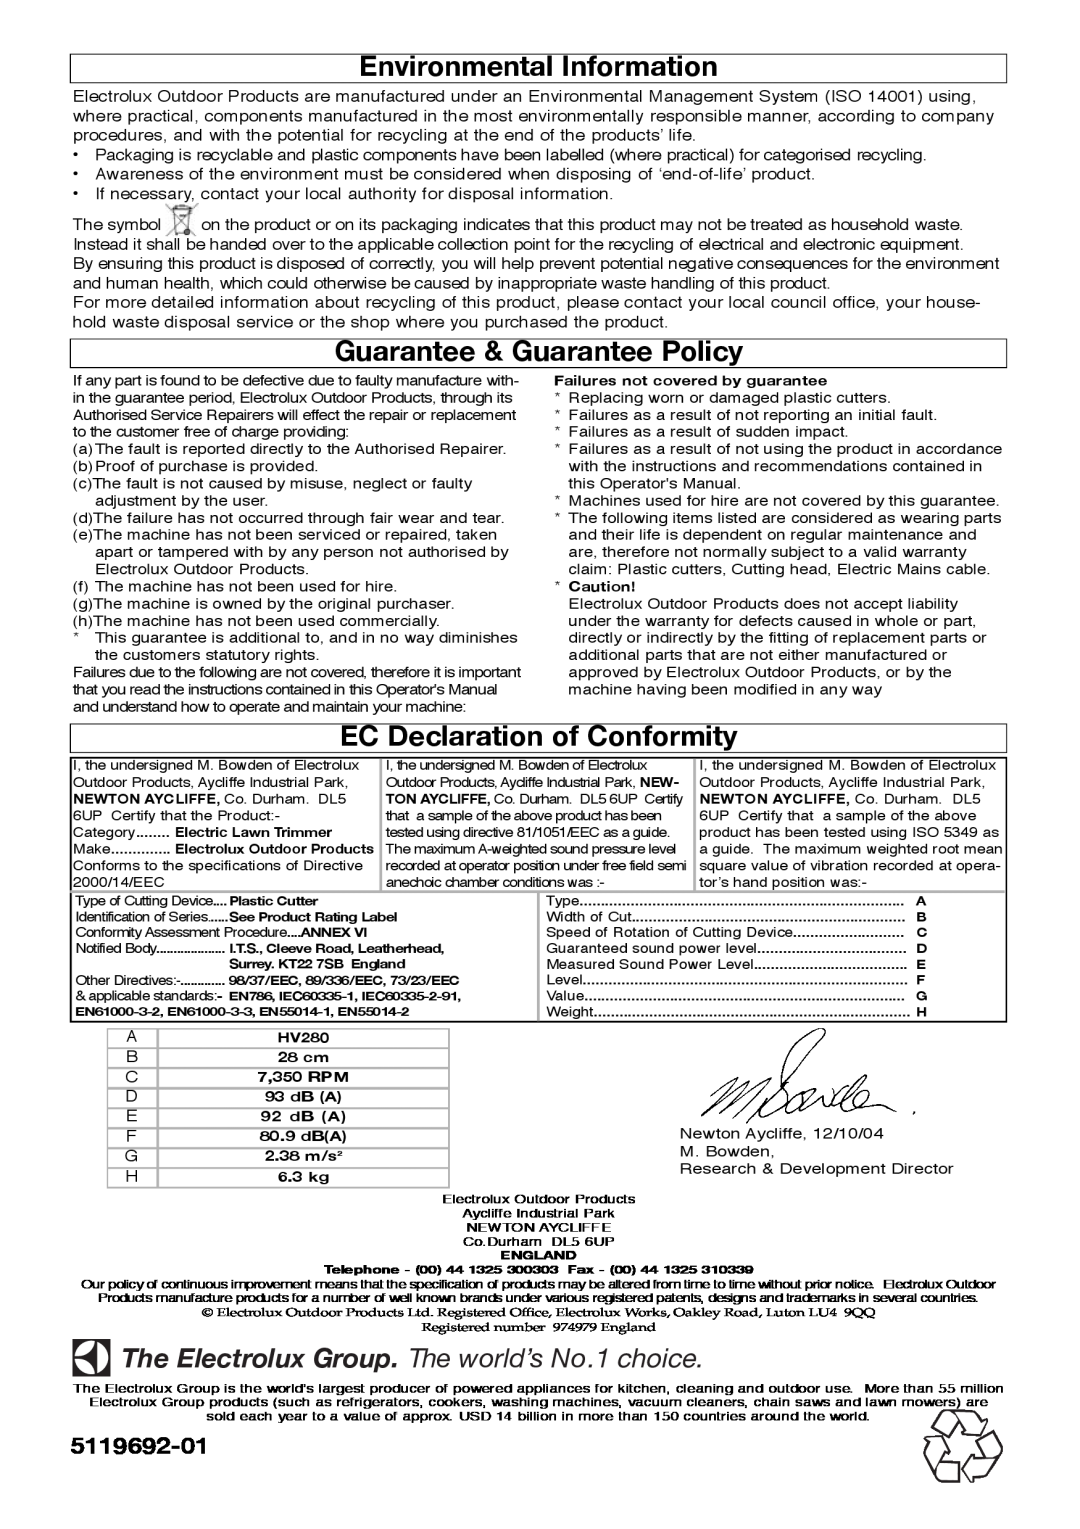 Flymo Trmmer manual Environmental Information, Guarantee & Guarantee Policy, EC Declaration of Conformity, 5119692-01 